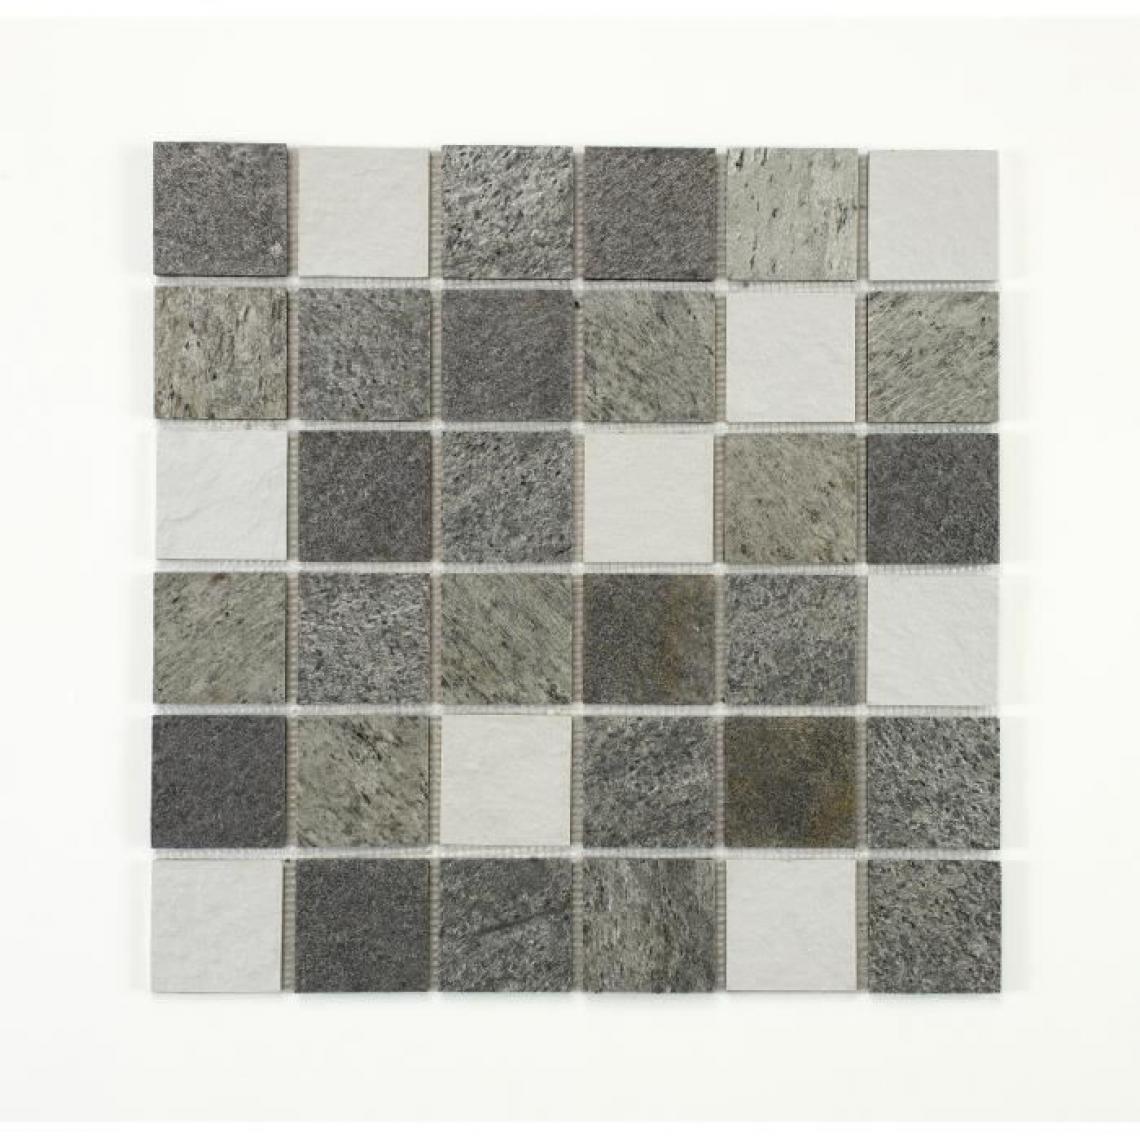 U-Tile - U-TILE Mosaique mixte resine + pierre 100 x 50 cm - 5 x 5 cm - mixte pierre et resine blanche - Receveur de douche